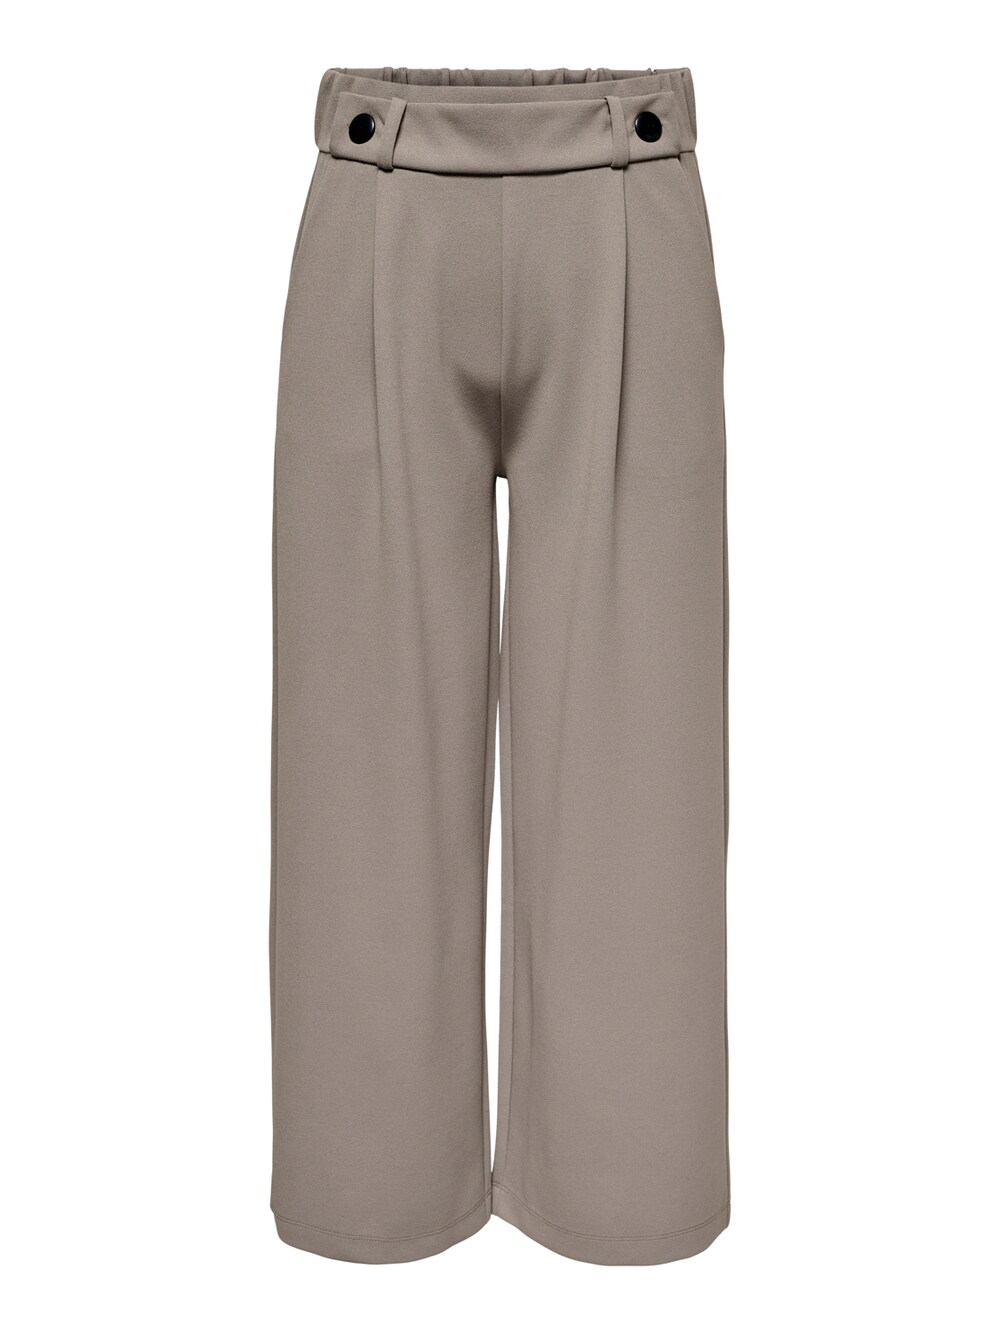 Широкие брюки со складками спереди JDY Geggo, светло-коричневый